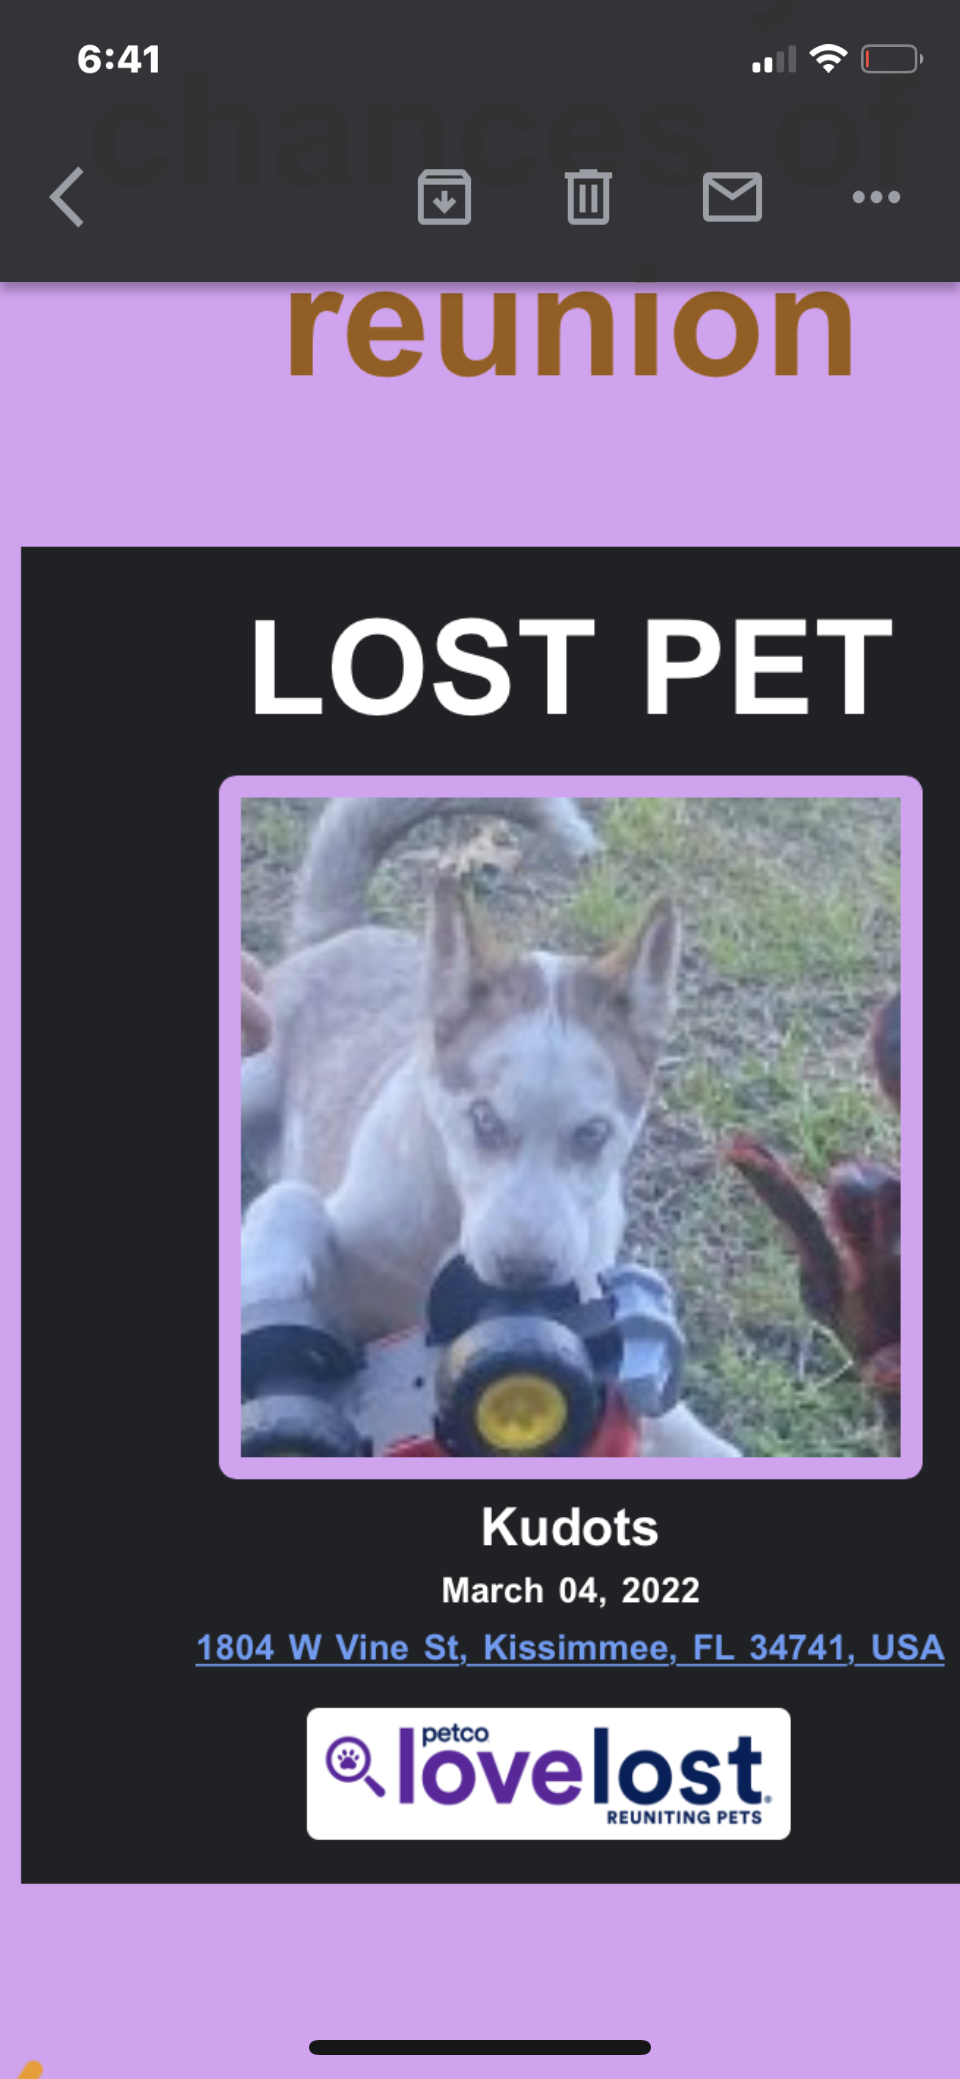 Image of Kudots, Lost Dog